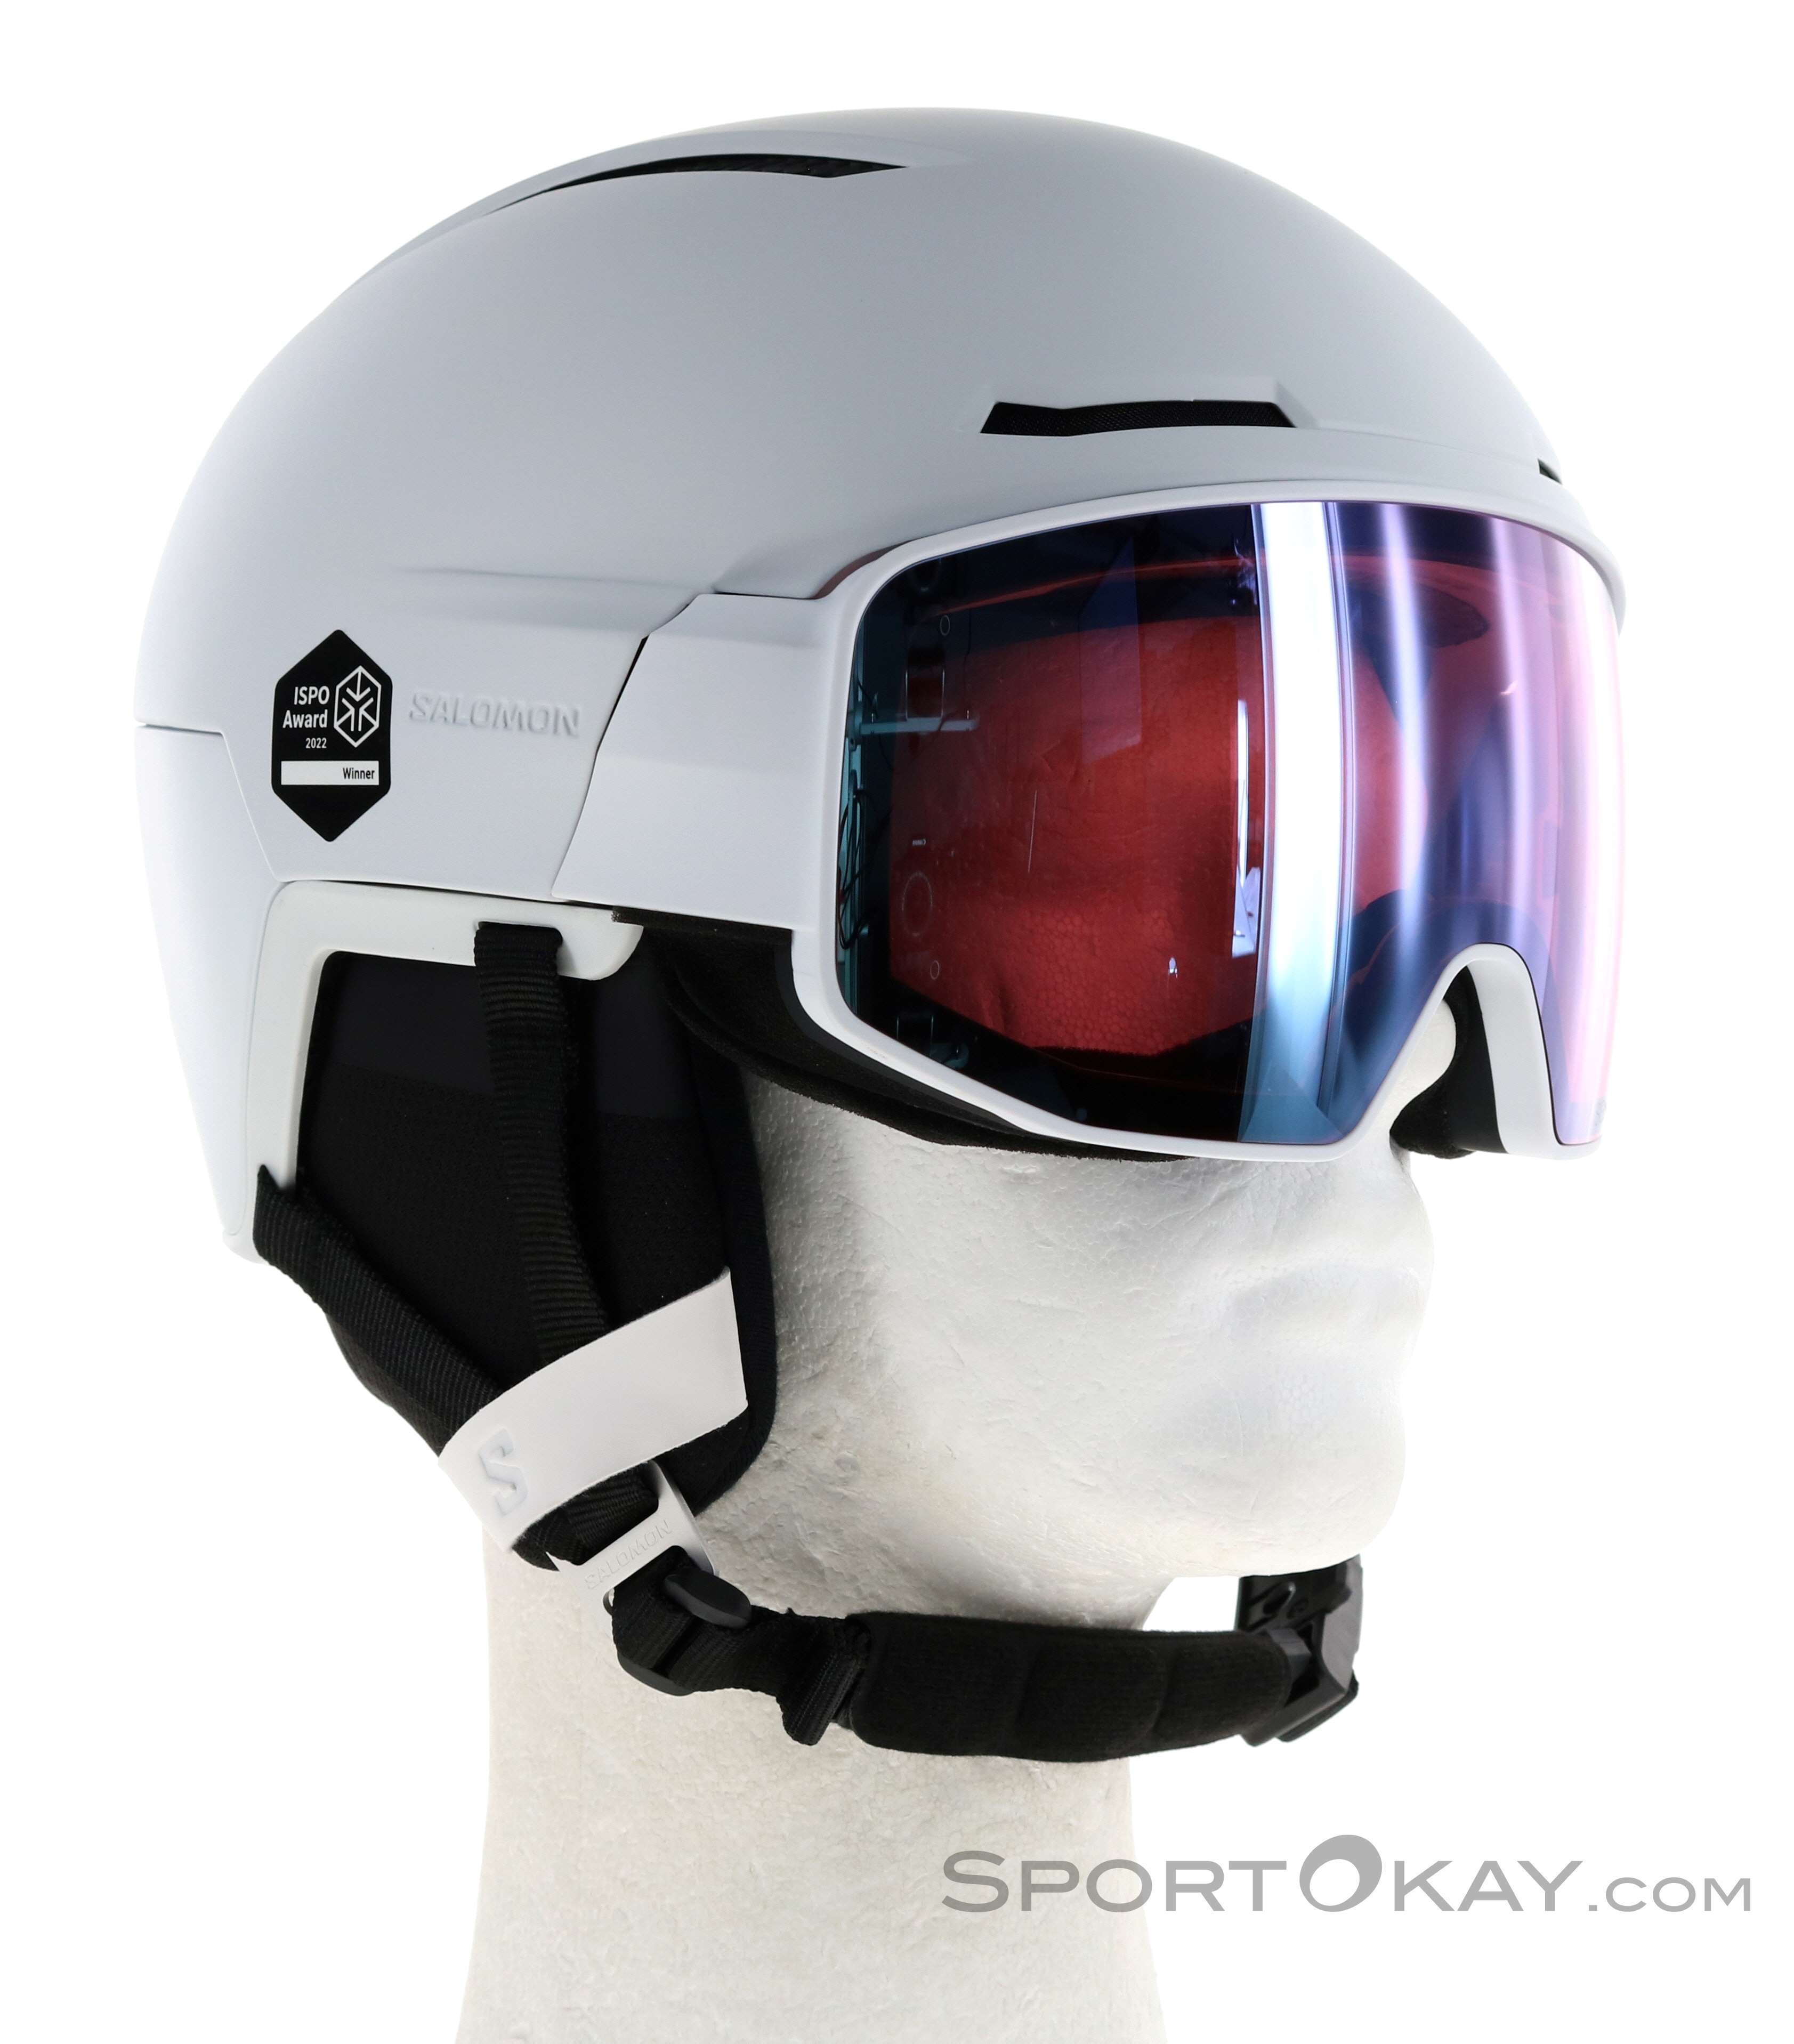 Salomon Driver Prime Sigma Plus - Ski helmet, Buy online